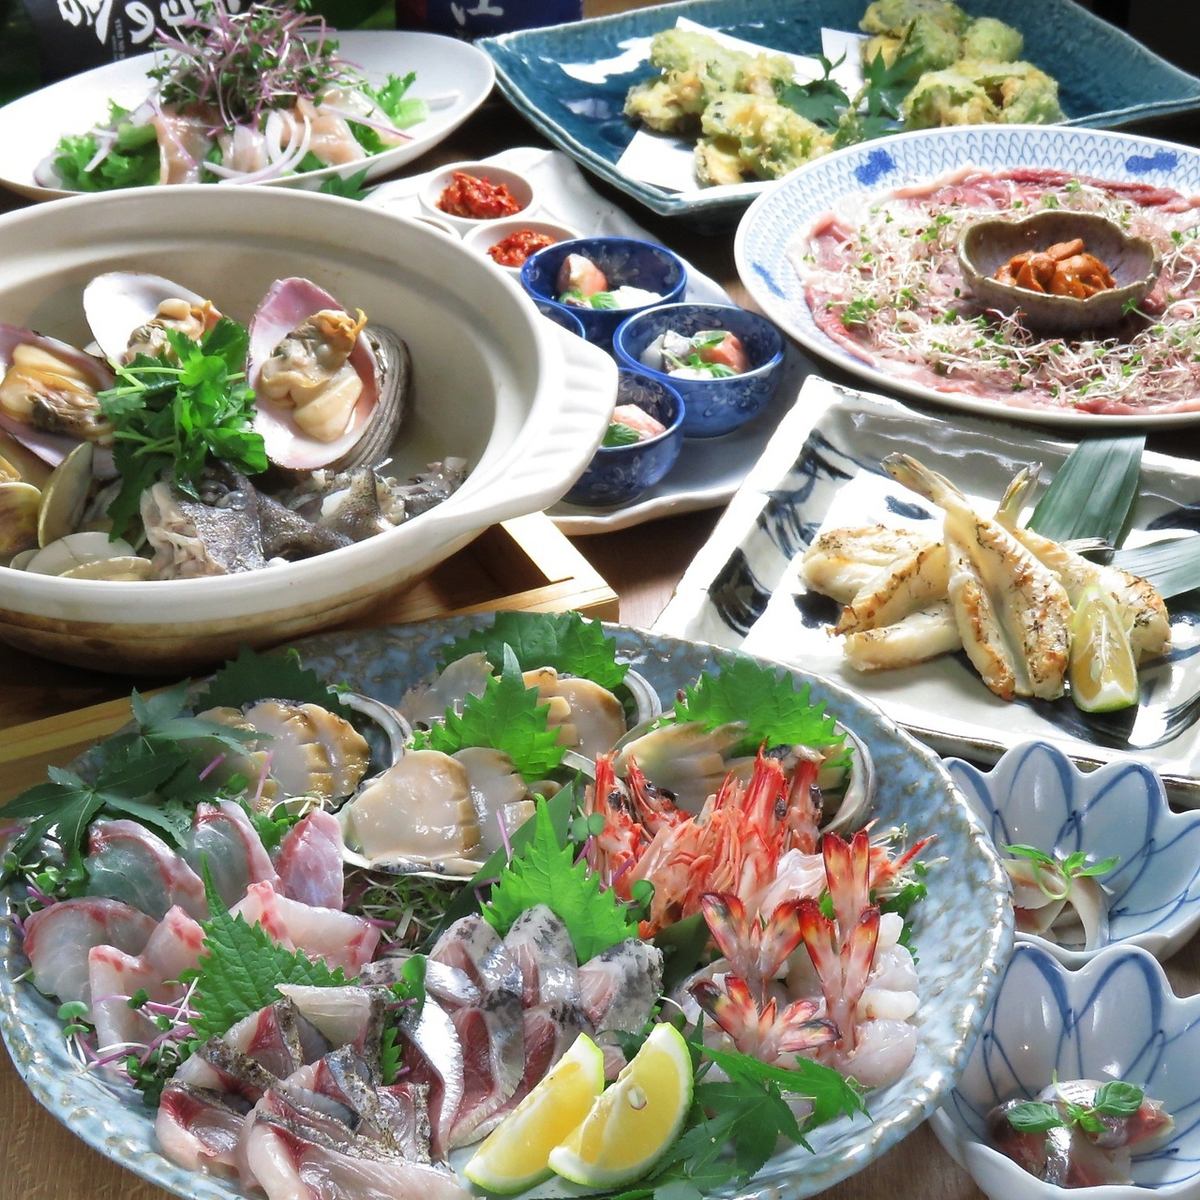 使用大分县产的鸡肉和从农场直送的鲜鱼，提供各种菜肴。